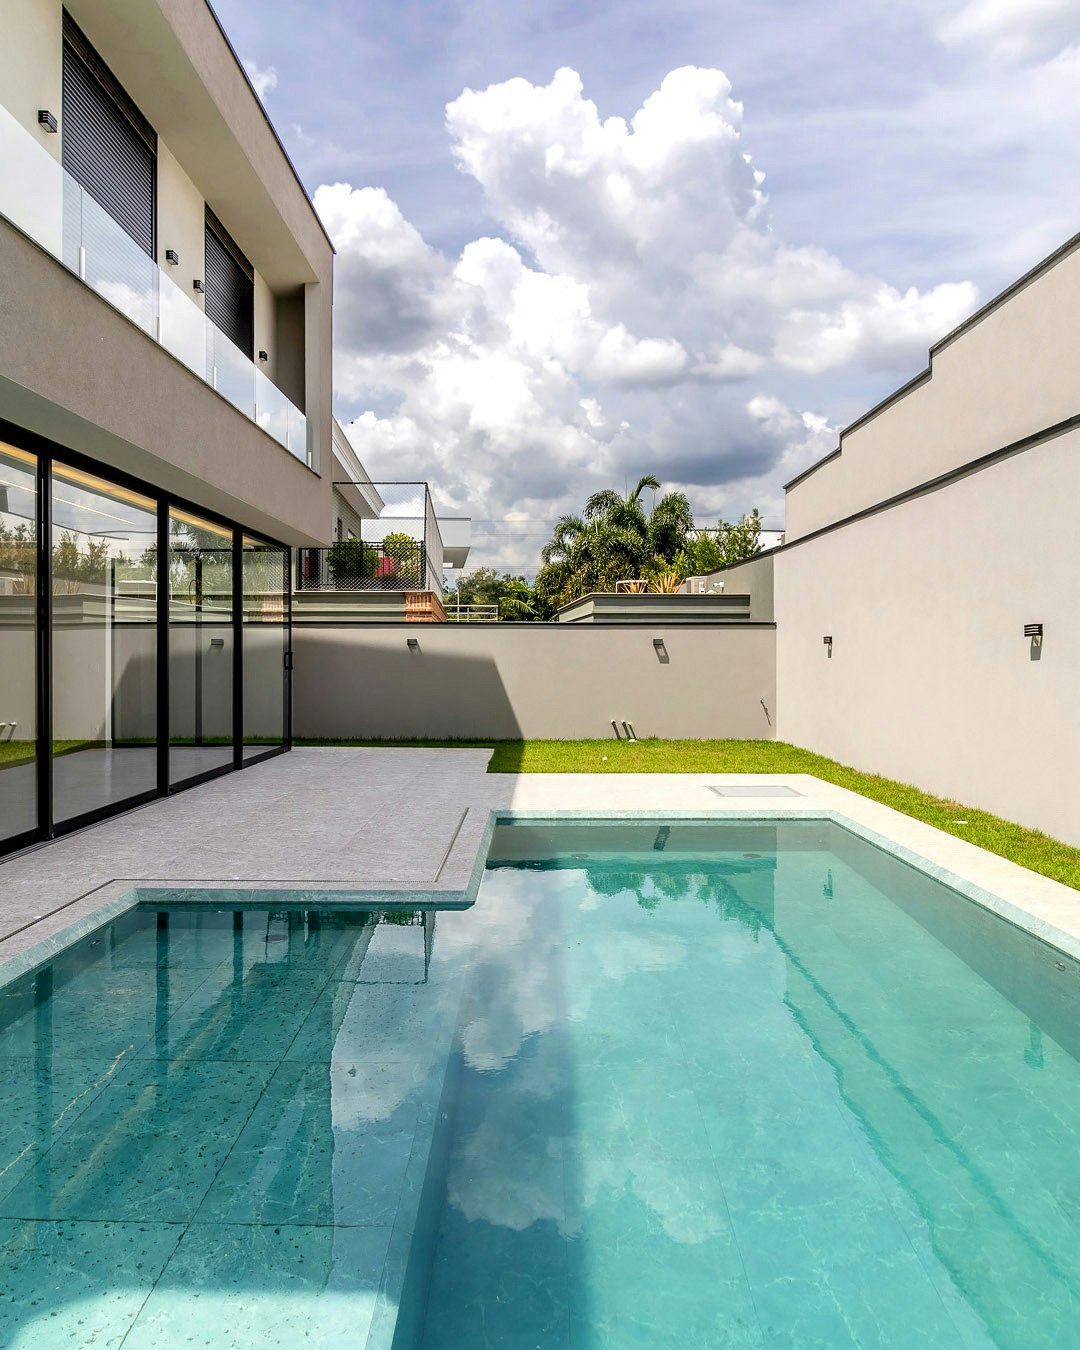 Imagem da piscina para portal imobiliário